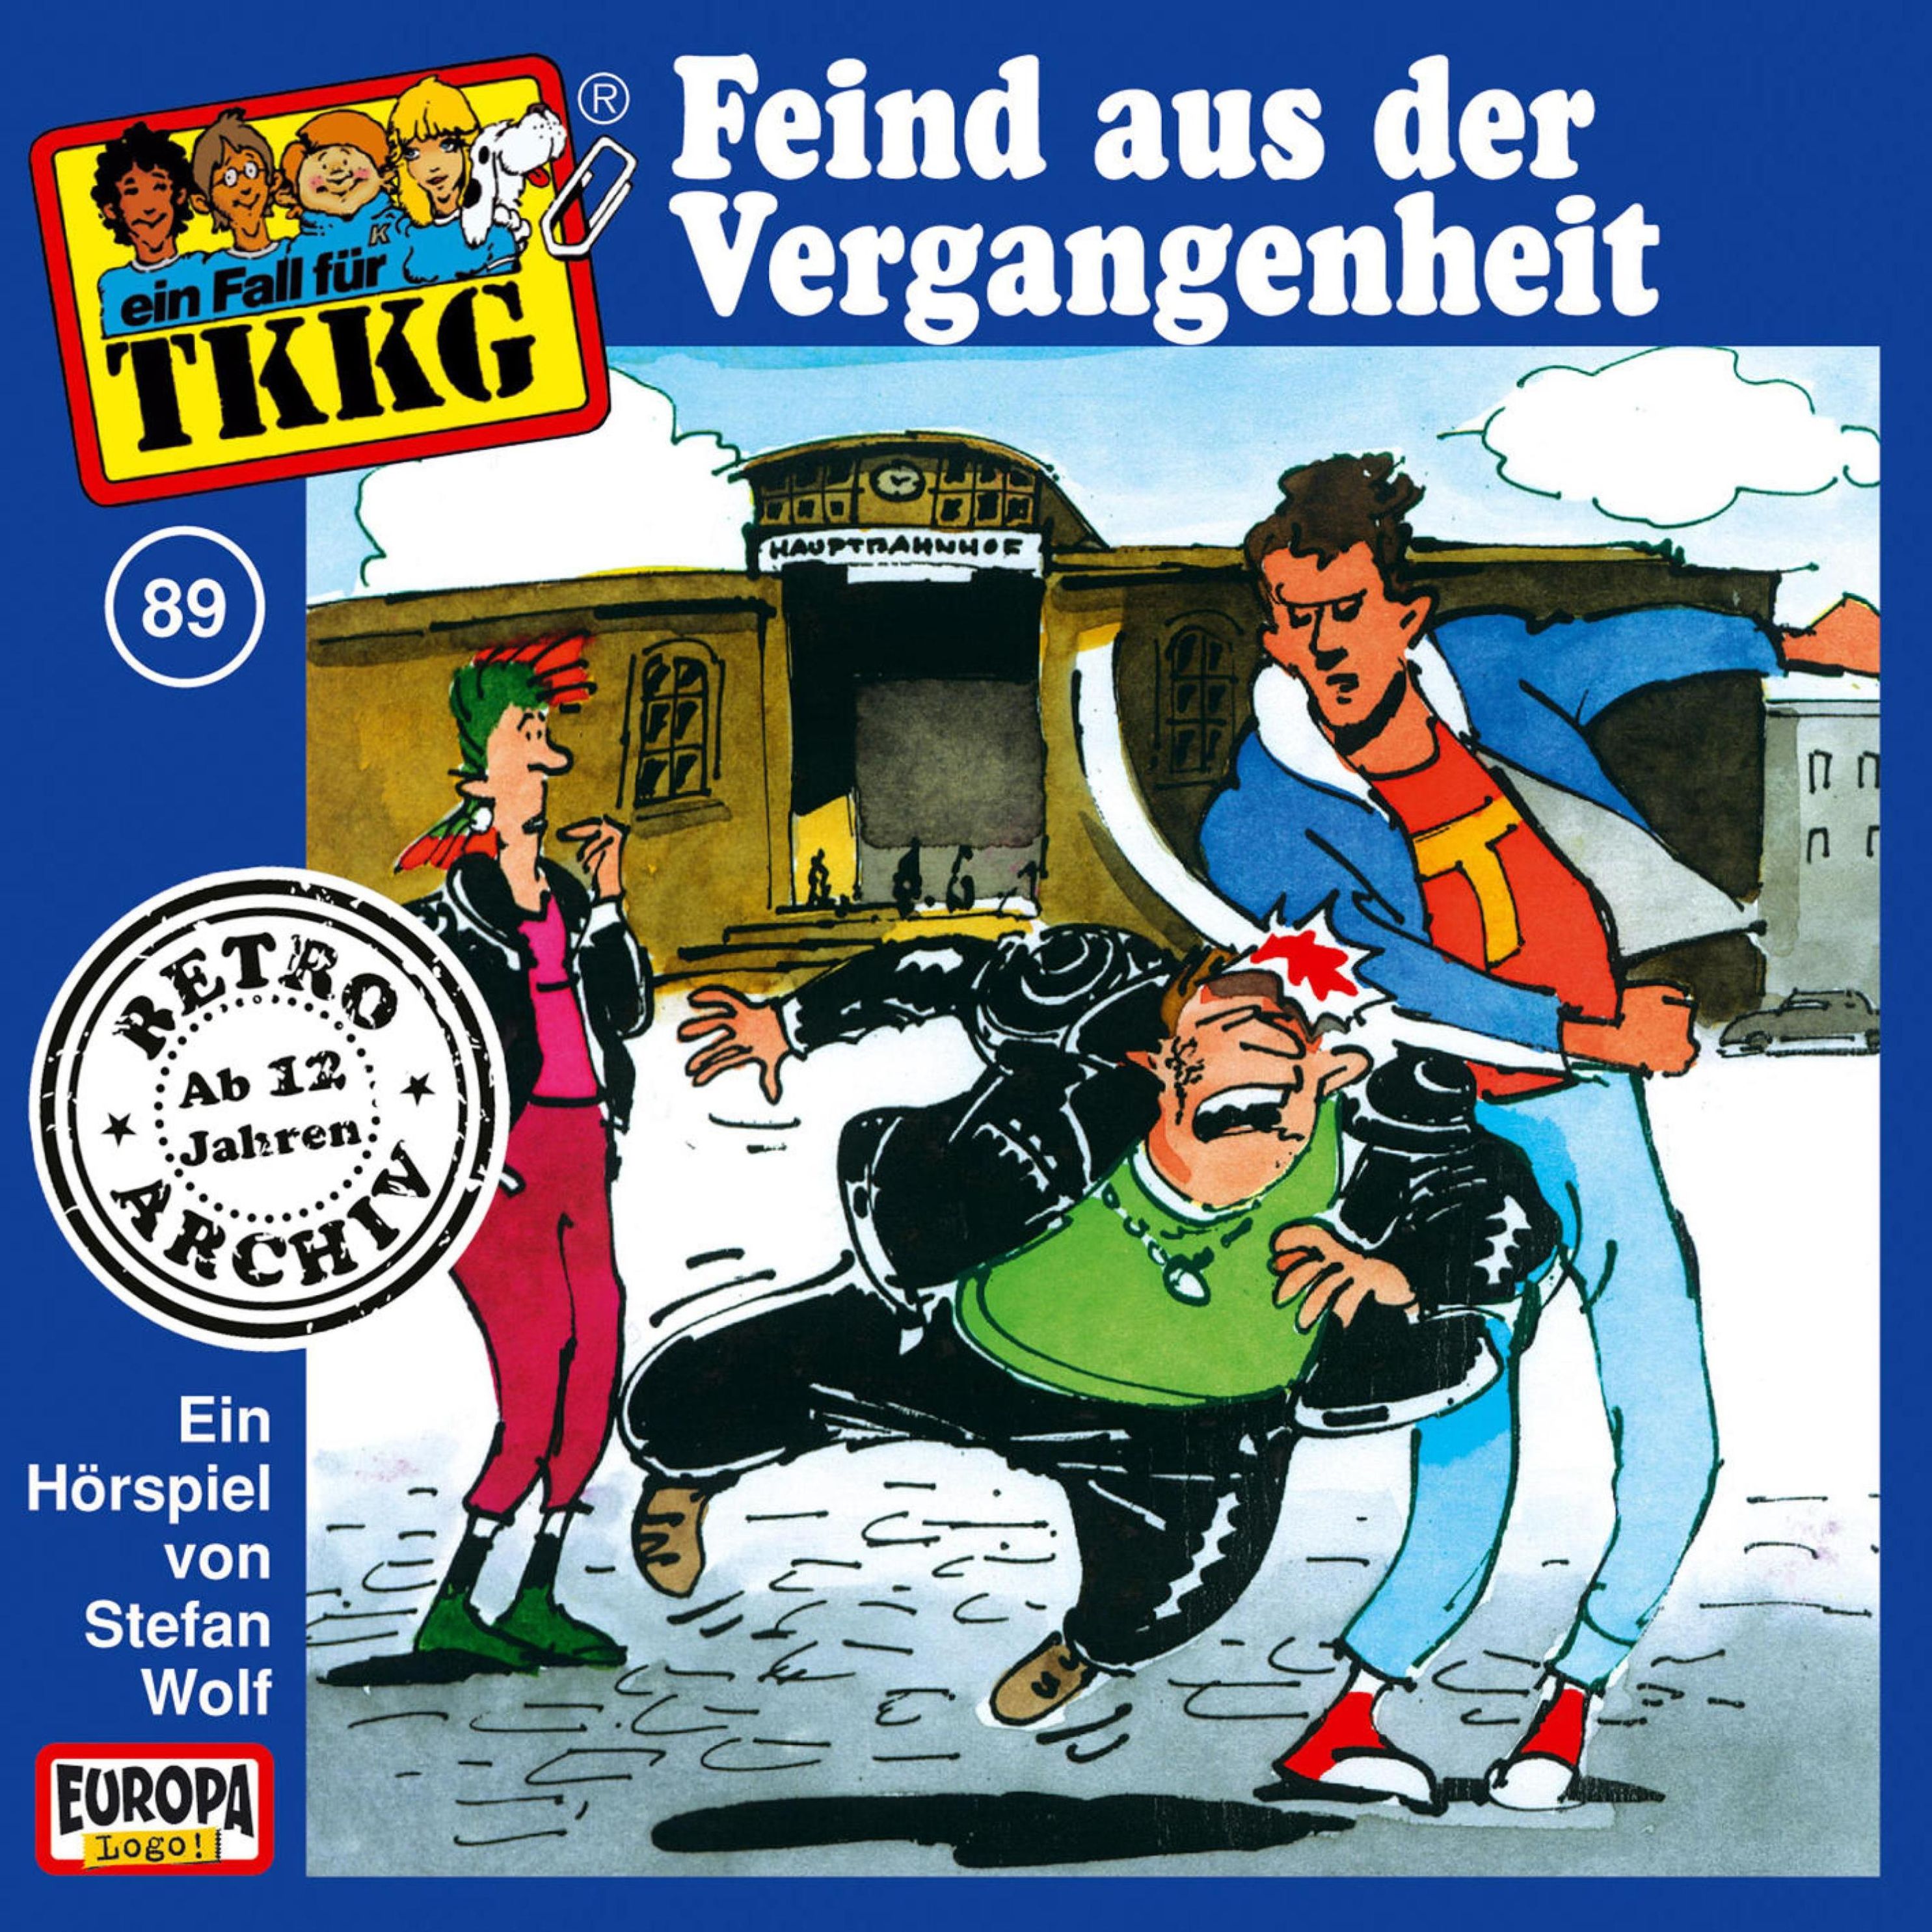 TKKG Retro-Archiv - 89 - TKKG - Folge 89: Feind aus der Vergangenheit  Hörbuch Download